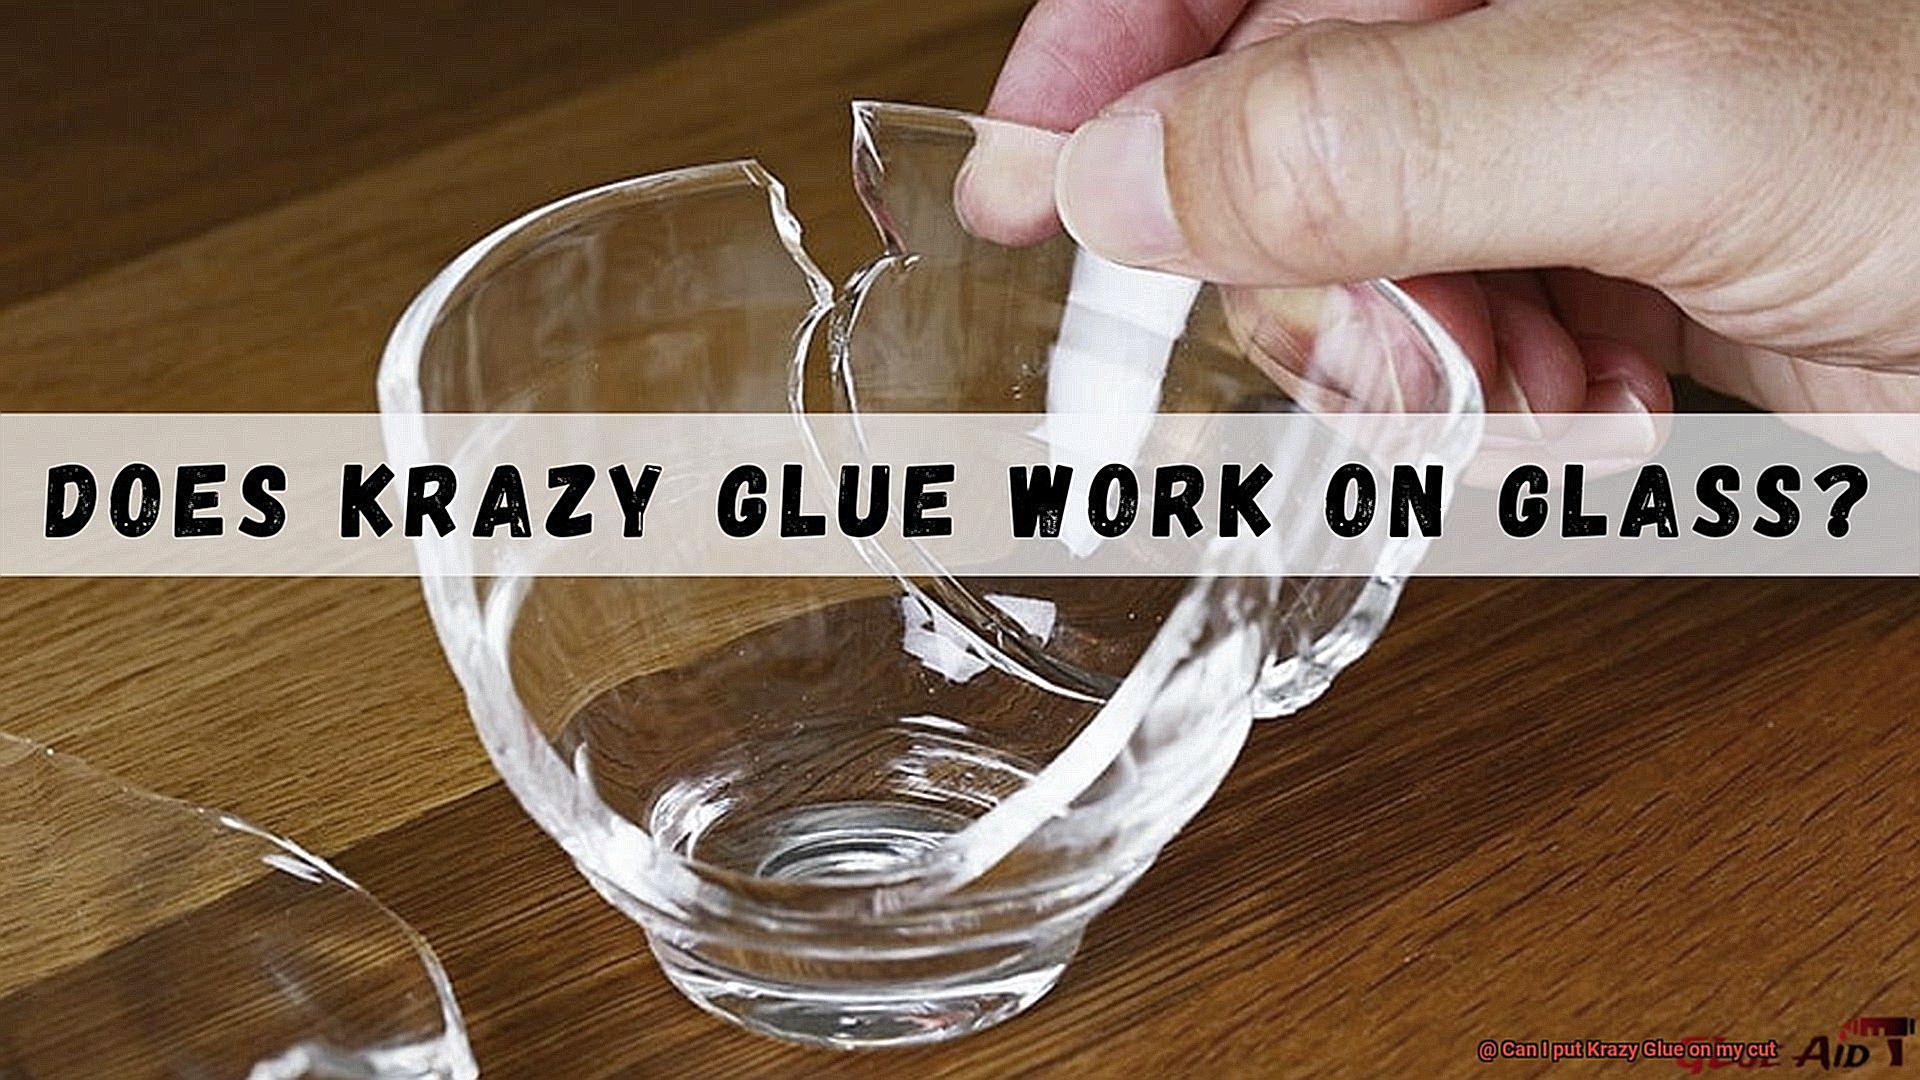 Can I put Krazy Glue on my cut-2